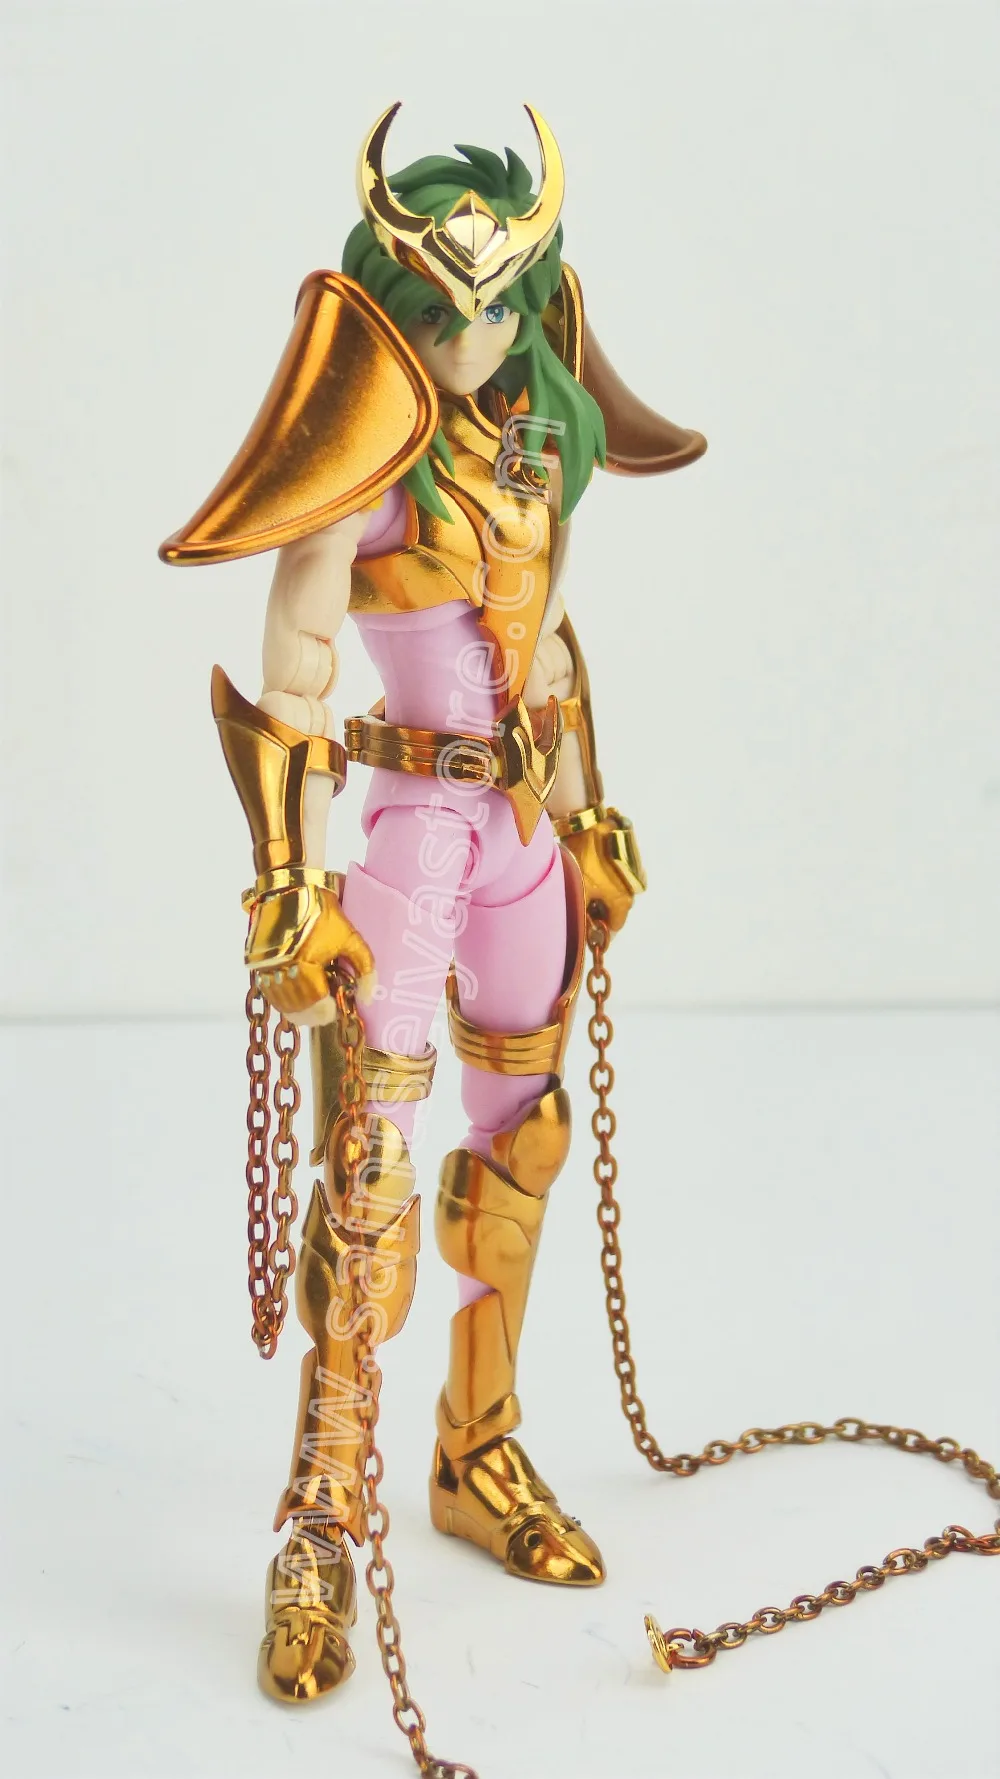 Великолепные игрушки GT EX Андромеда Shun V3 Золотая версия final Ткань EX Металл броня Бронзовый святая Сейя мистическая одежда Миф Ткань фигурку